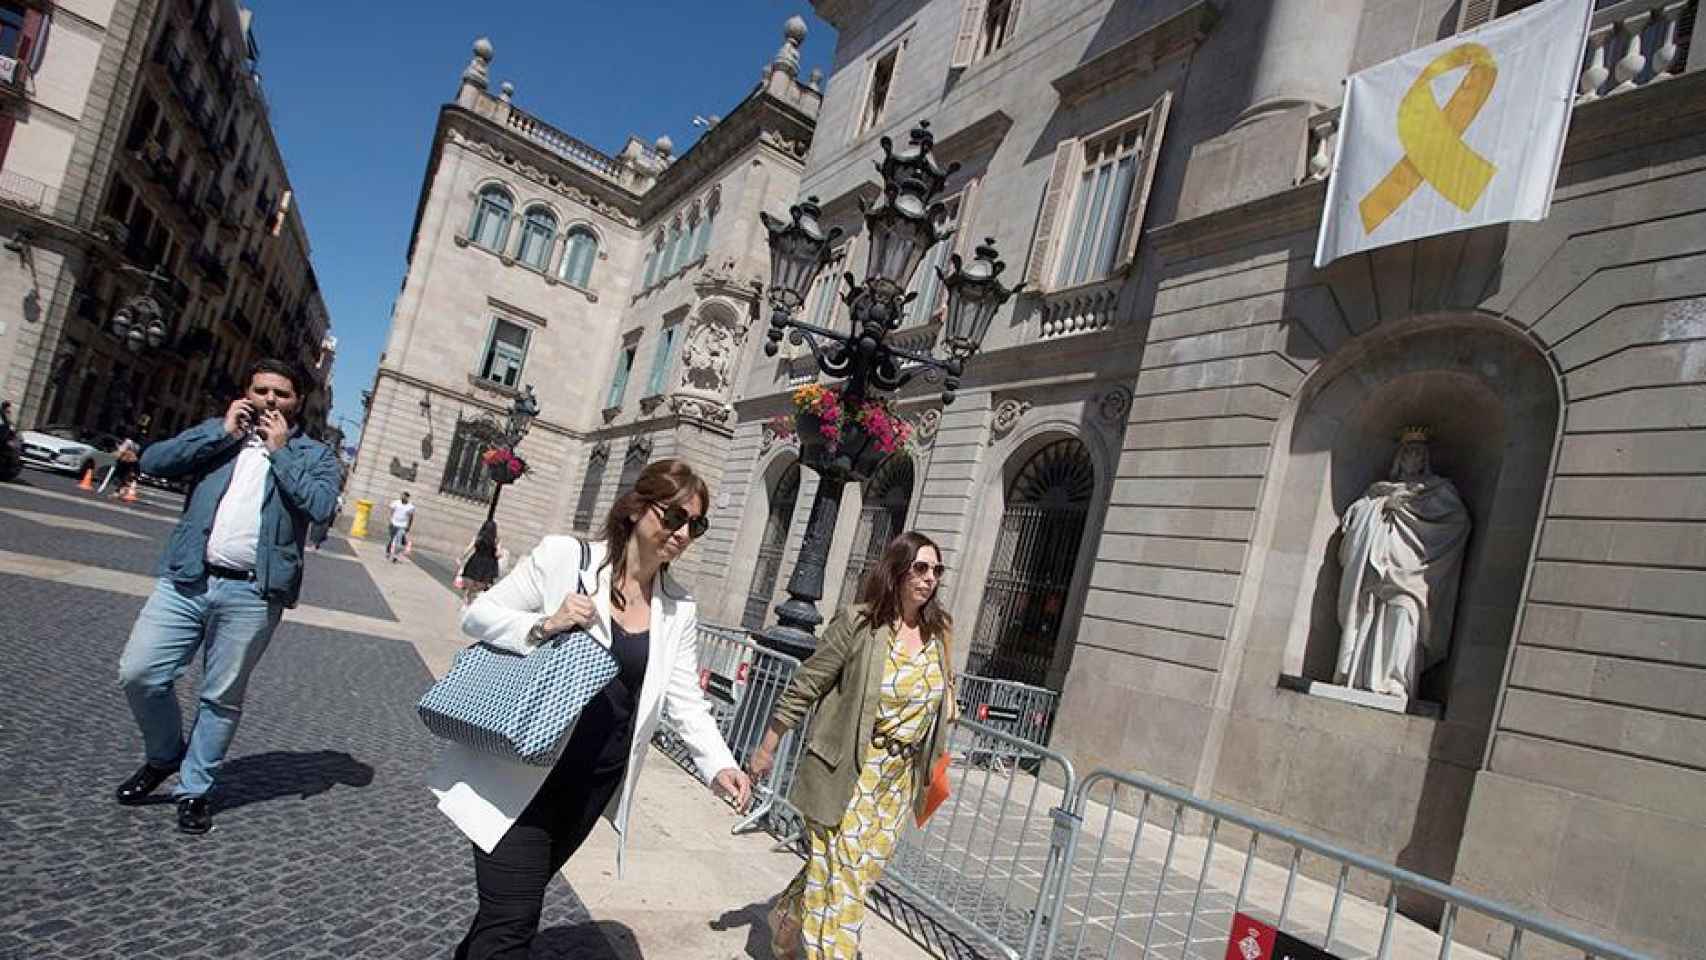 Los tres regidores de Ciudadanos, Marilén Barceló (c), Mari Luz Guilarte (d) y Paco Sierra (i) entran en el Ayuntamiento de Barcelona, donde cuelga un lazo amarillo / EFE